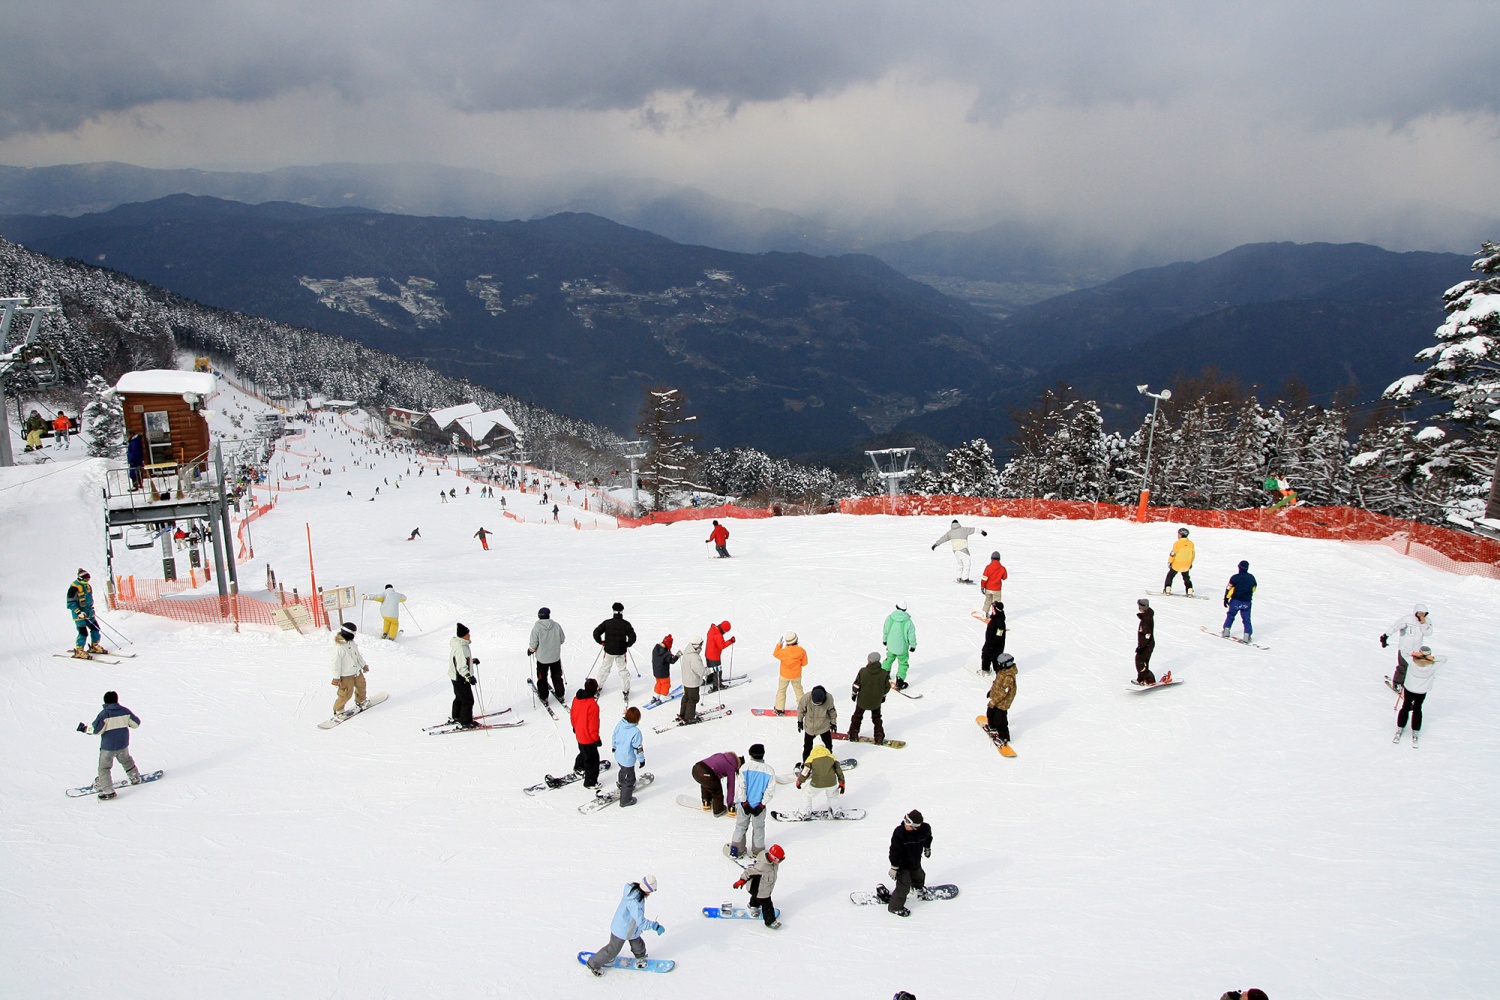 Ikawa Ski Ground – Kainayamaの画像1